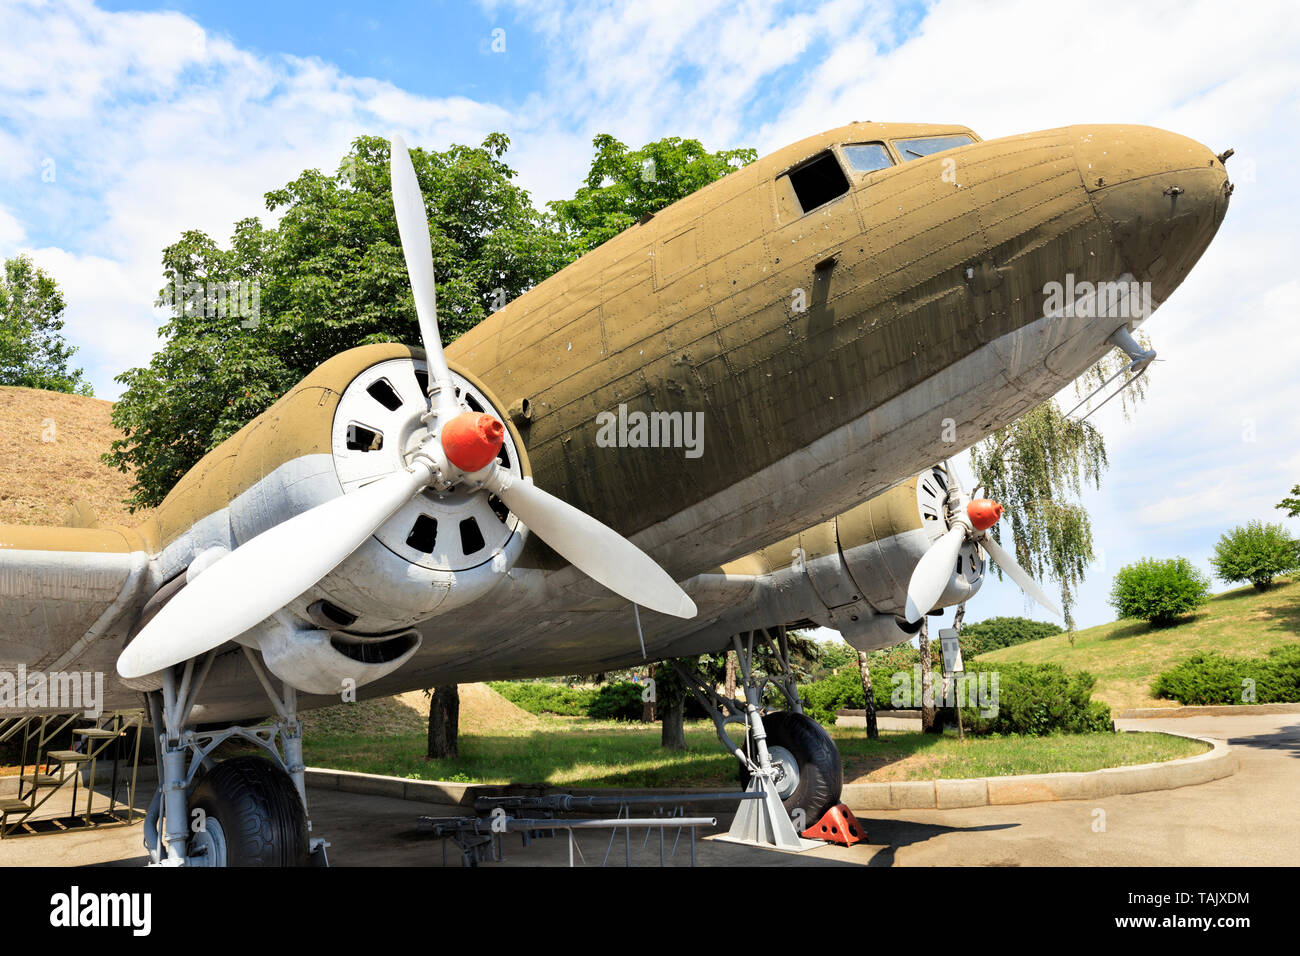 Un vieux avions militaires de transport Lisunov Li-2 de la Deuxième Guerre mondiale, se dresse dans un parc contre un ciel bleu nuageux. Banque D'Images